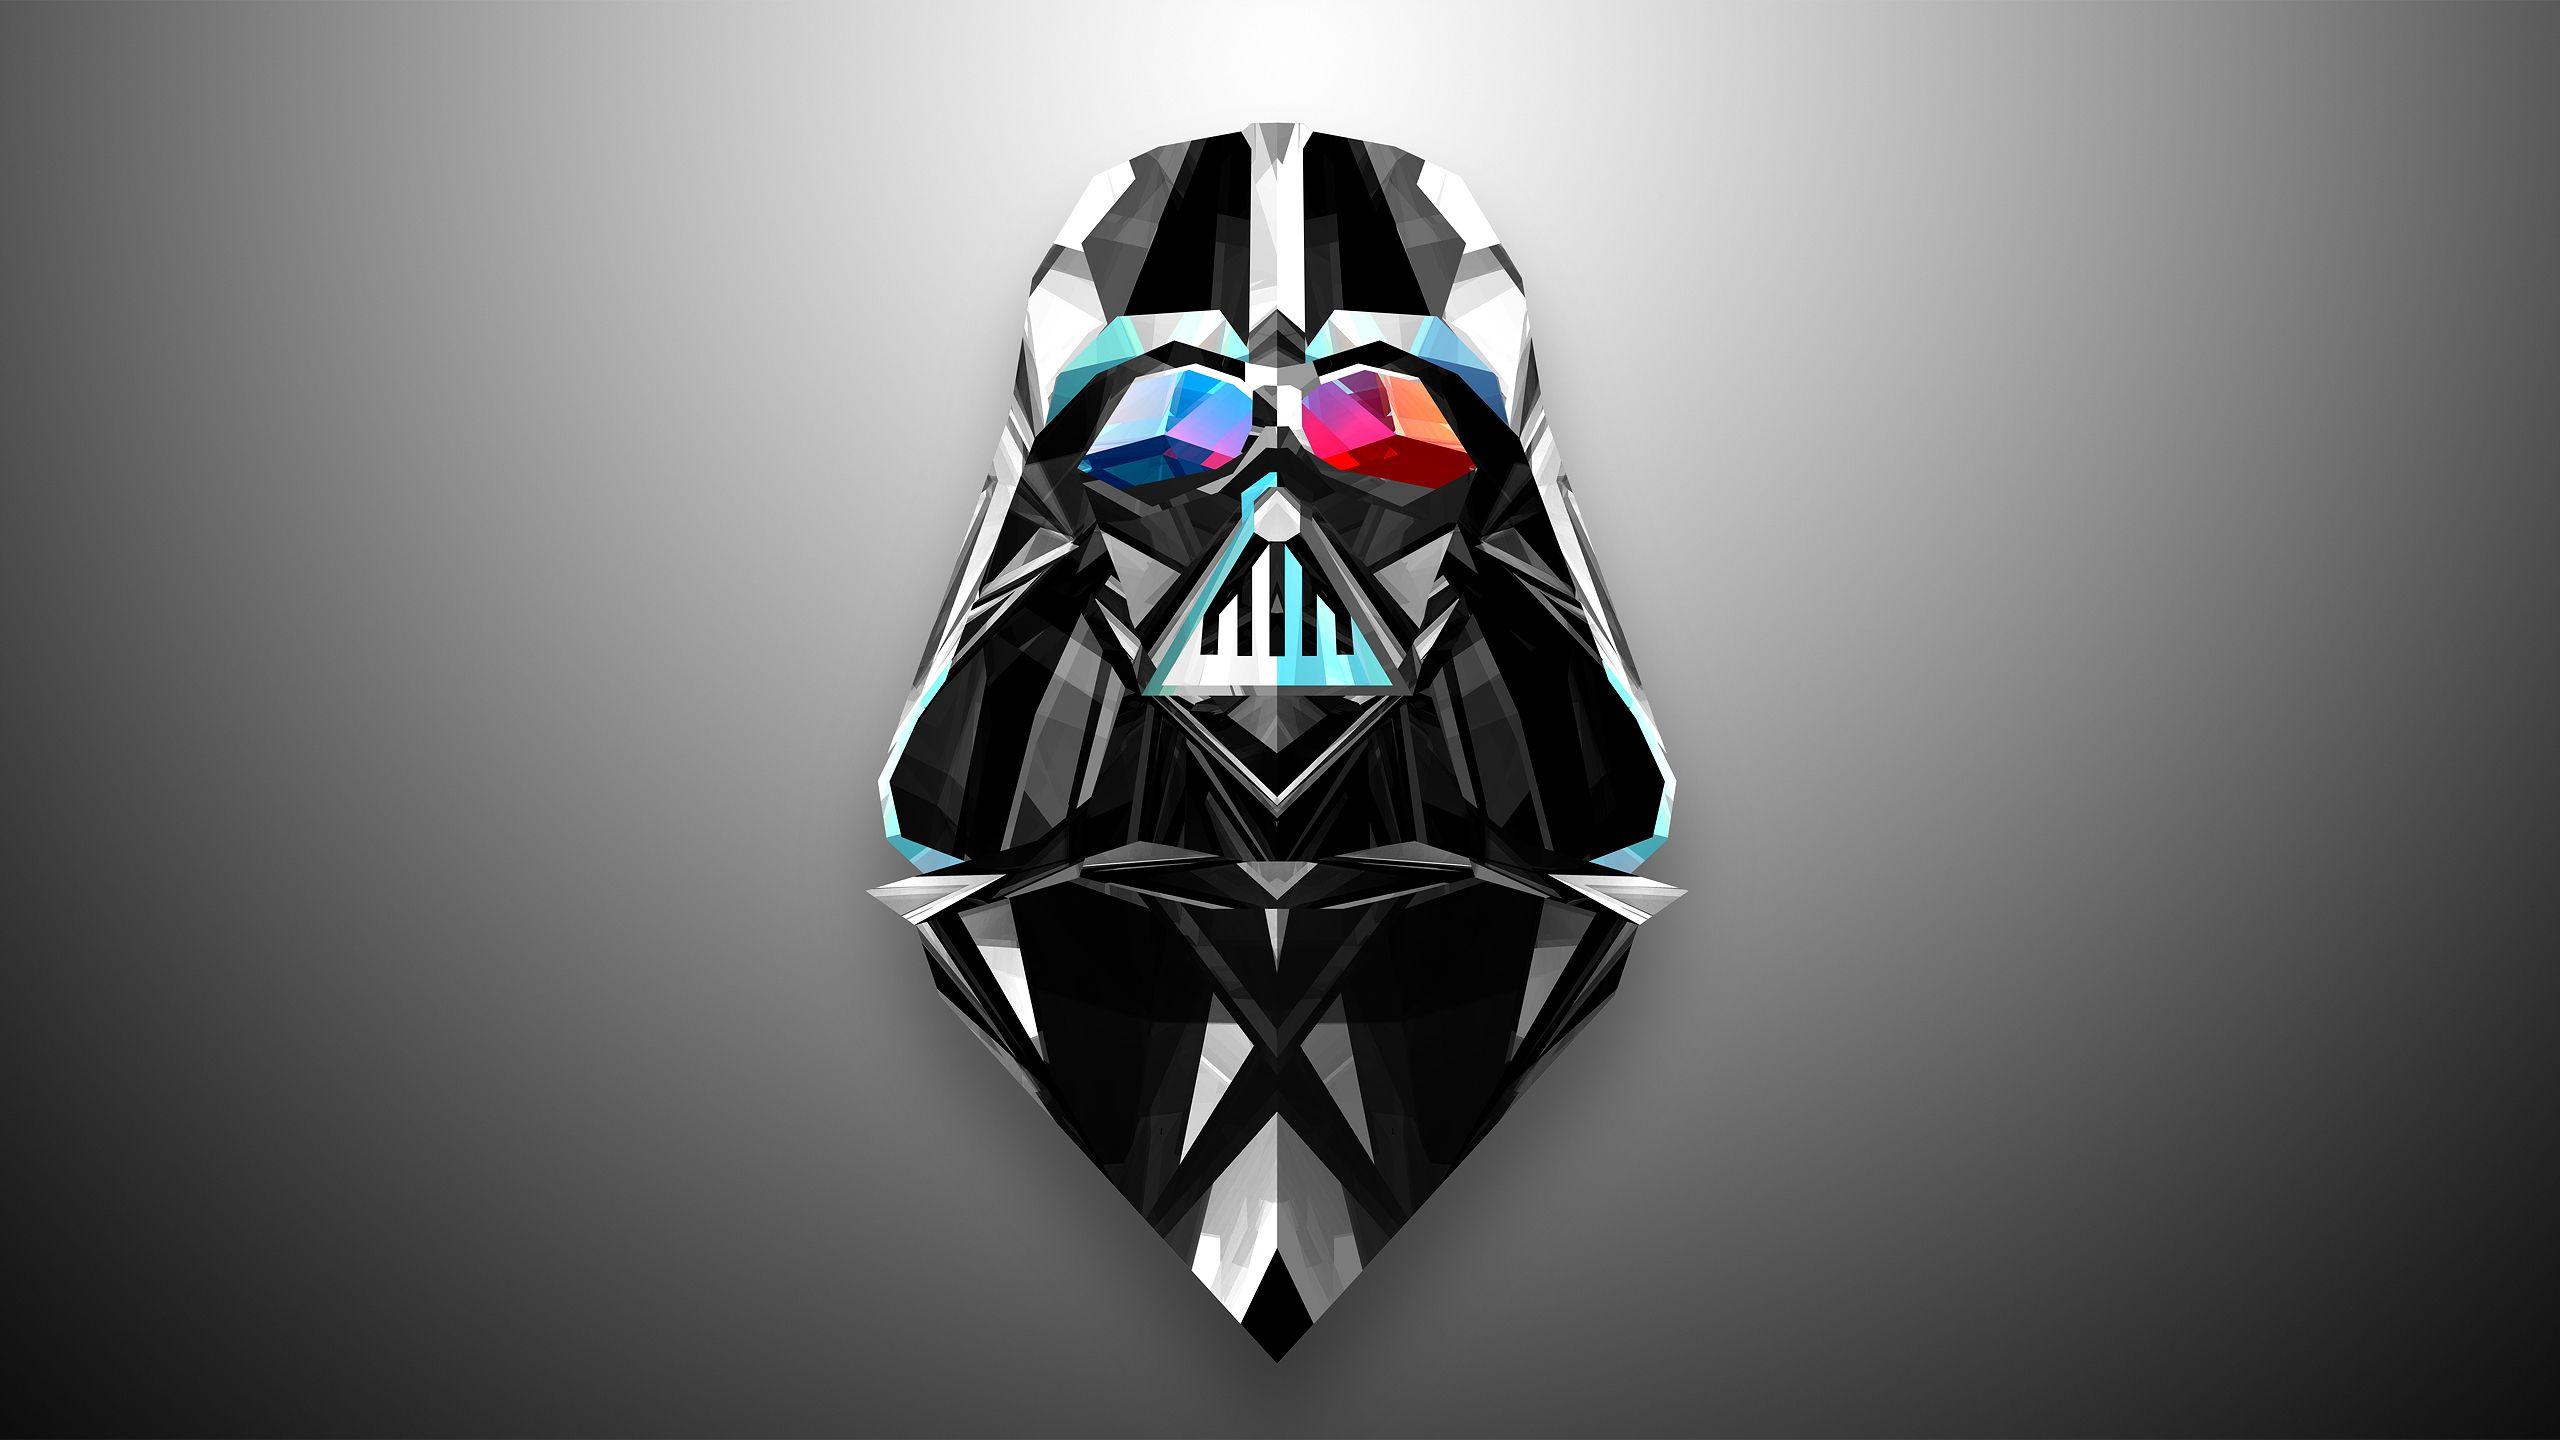 Star Wars Darth Vader Free Wallpaper